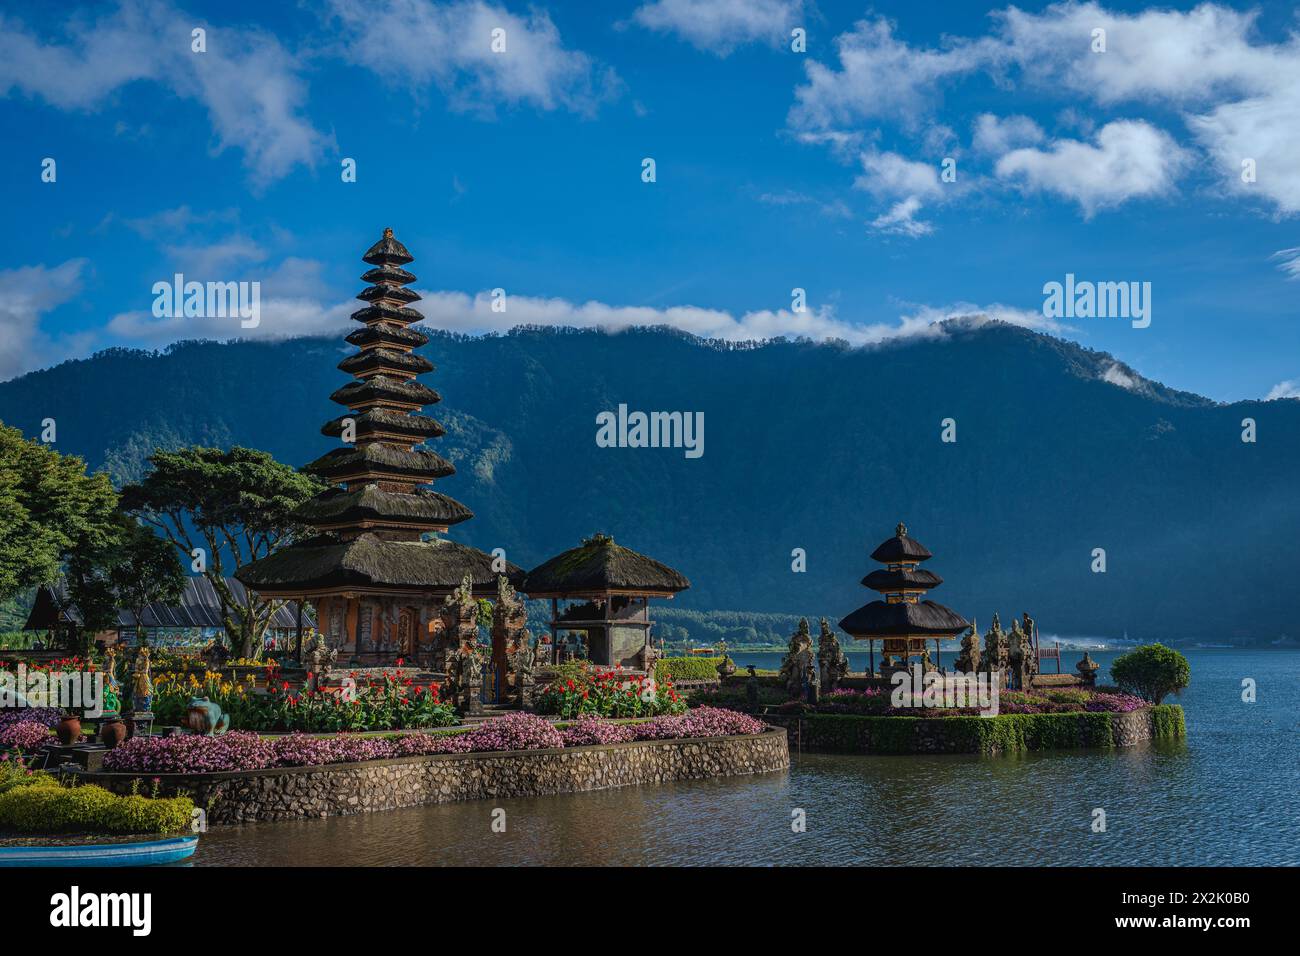 Una vista panoramica di un tradizionale tempio balinese circondato da vividi giardini floreali e adagiato sullo sfondo di una montagna. L'immagine cattura la cultura Foto Stock